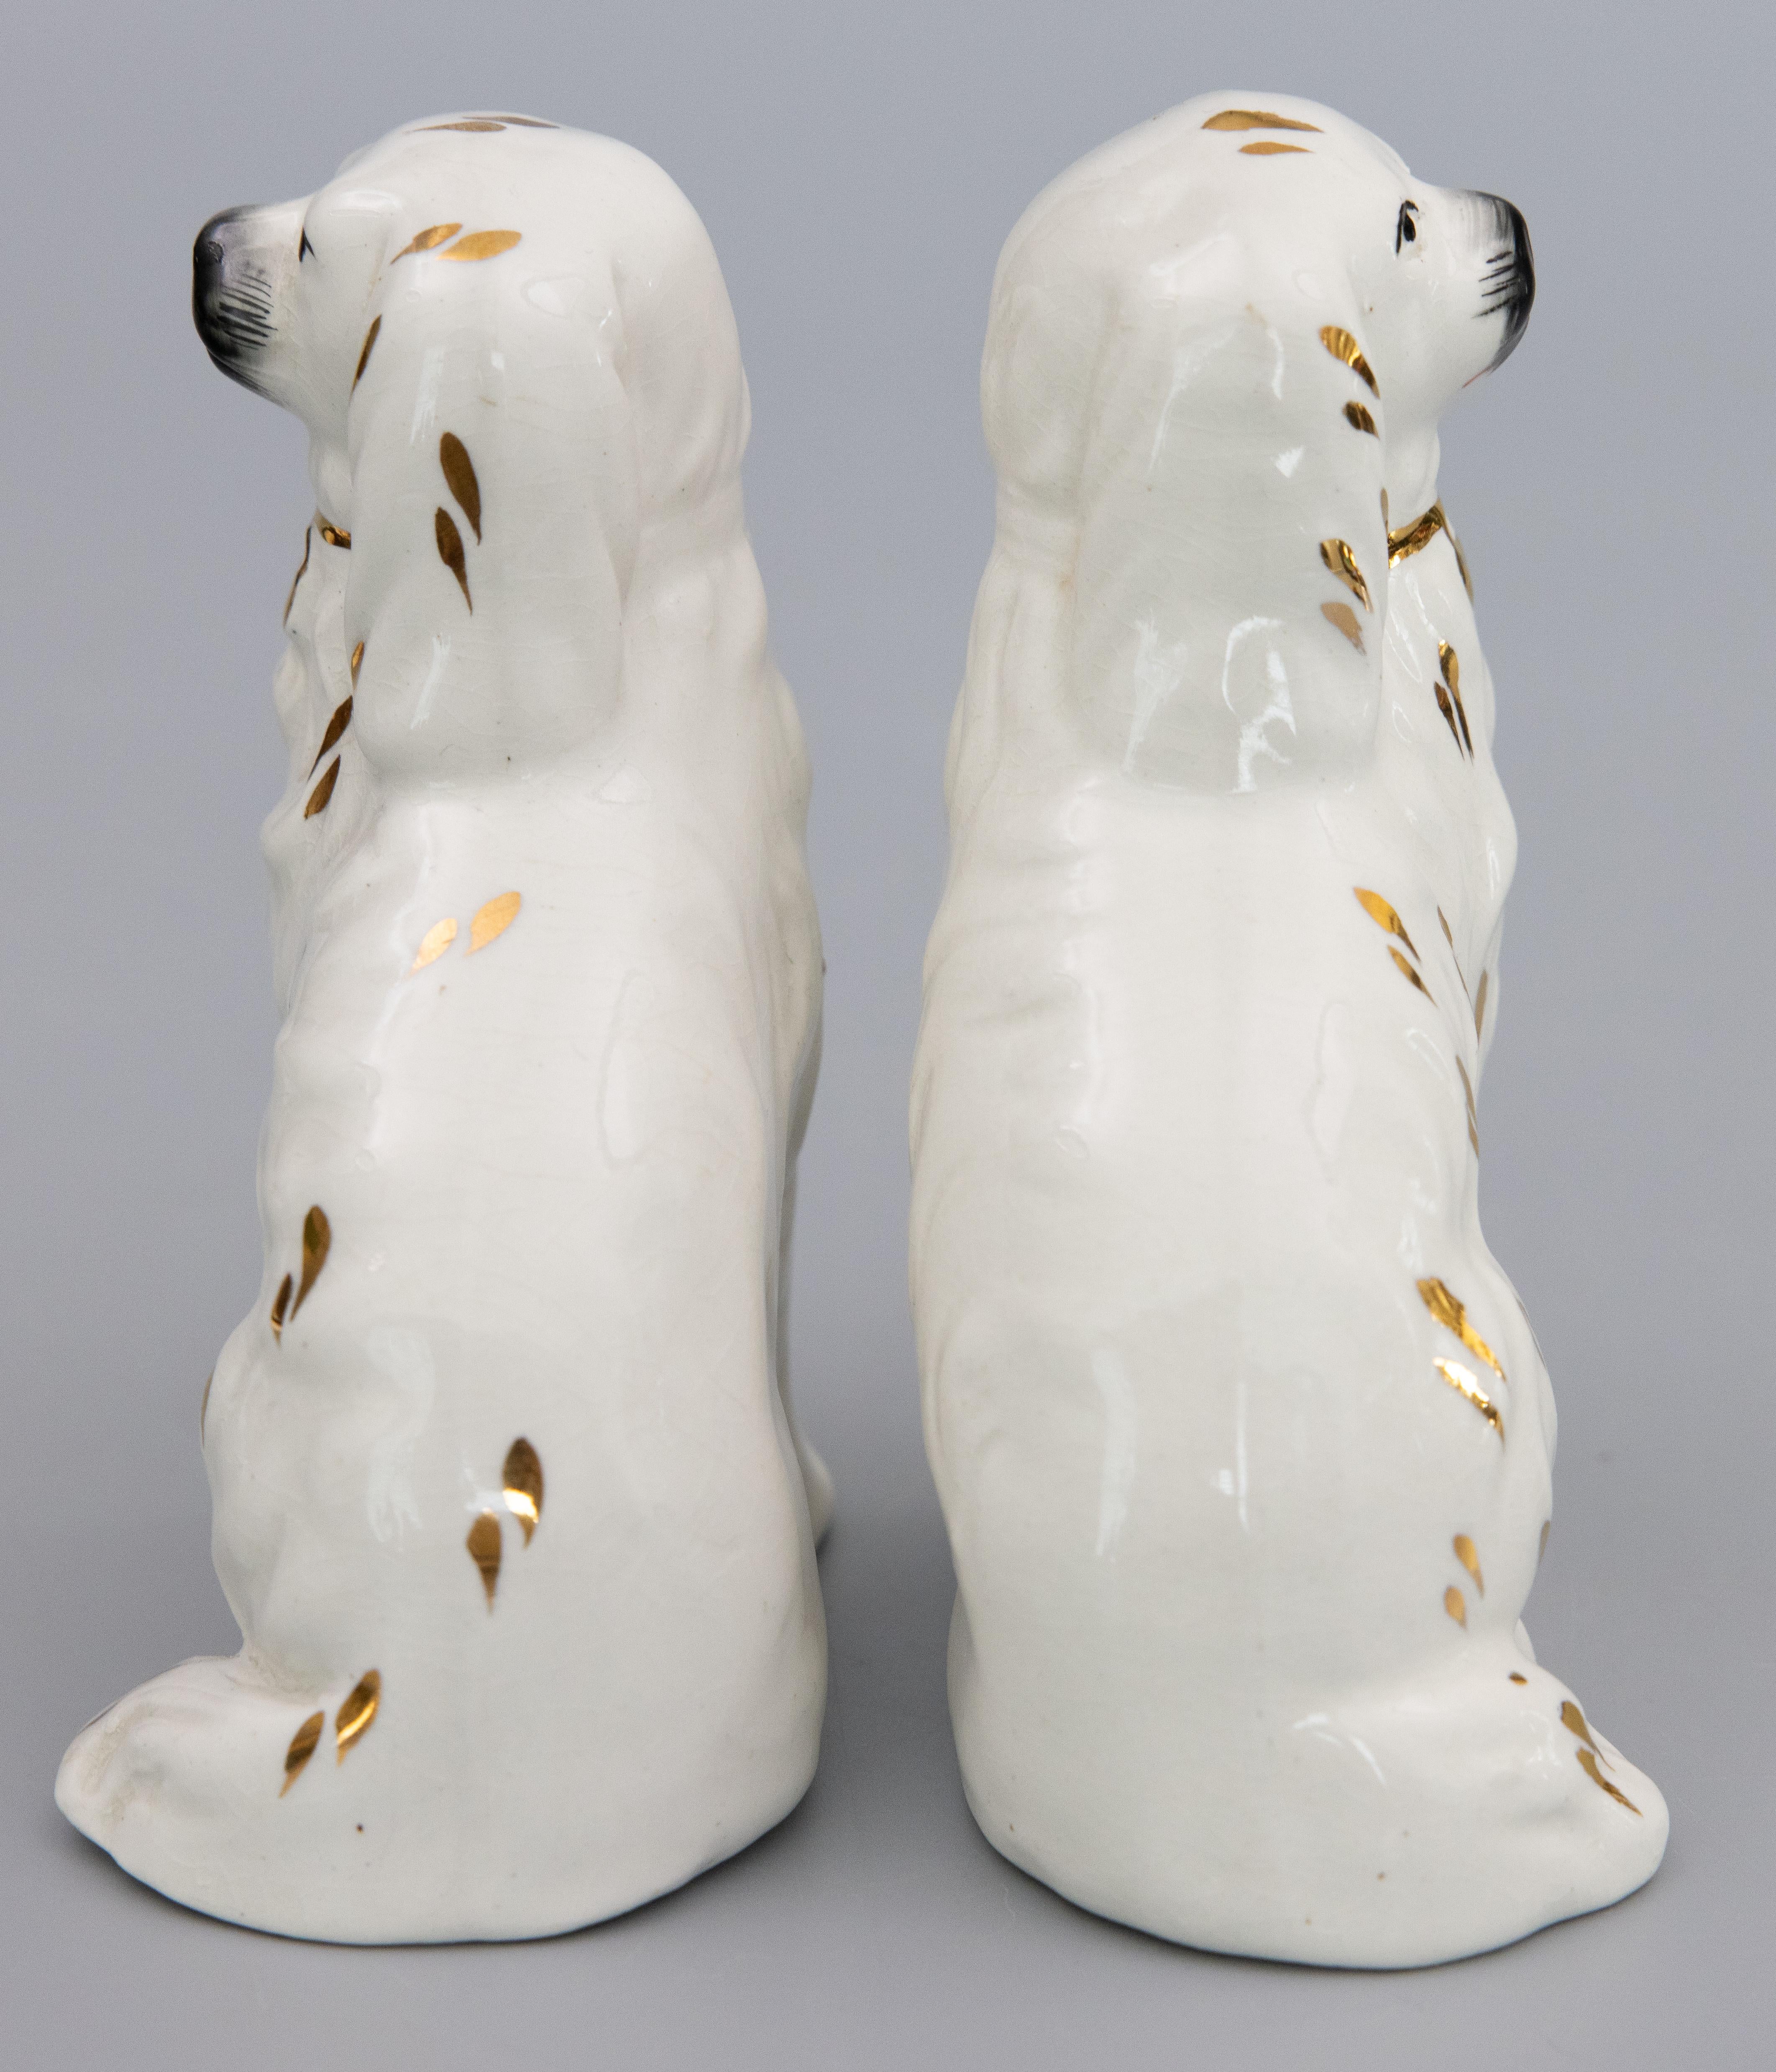 Magnifique paire de chiens d'épagneul anglais Staffordshire du début du 20e siècle, avec des accents dorés. Marque du fabricant au revers. Ces charmants chiens sont peints à la main avec de magnifiques détails et les expressions les plus douces.